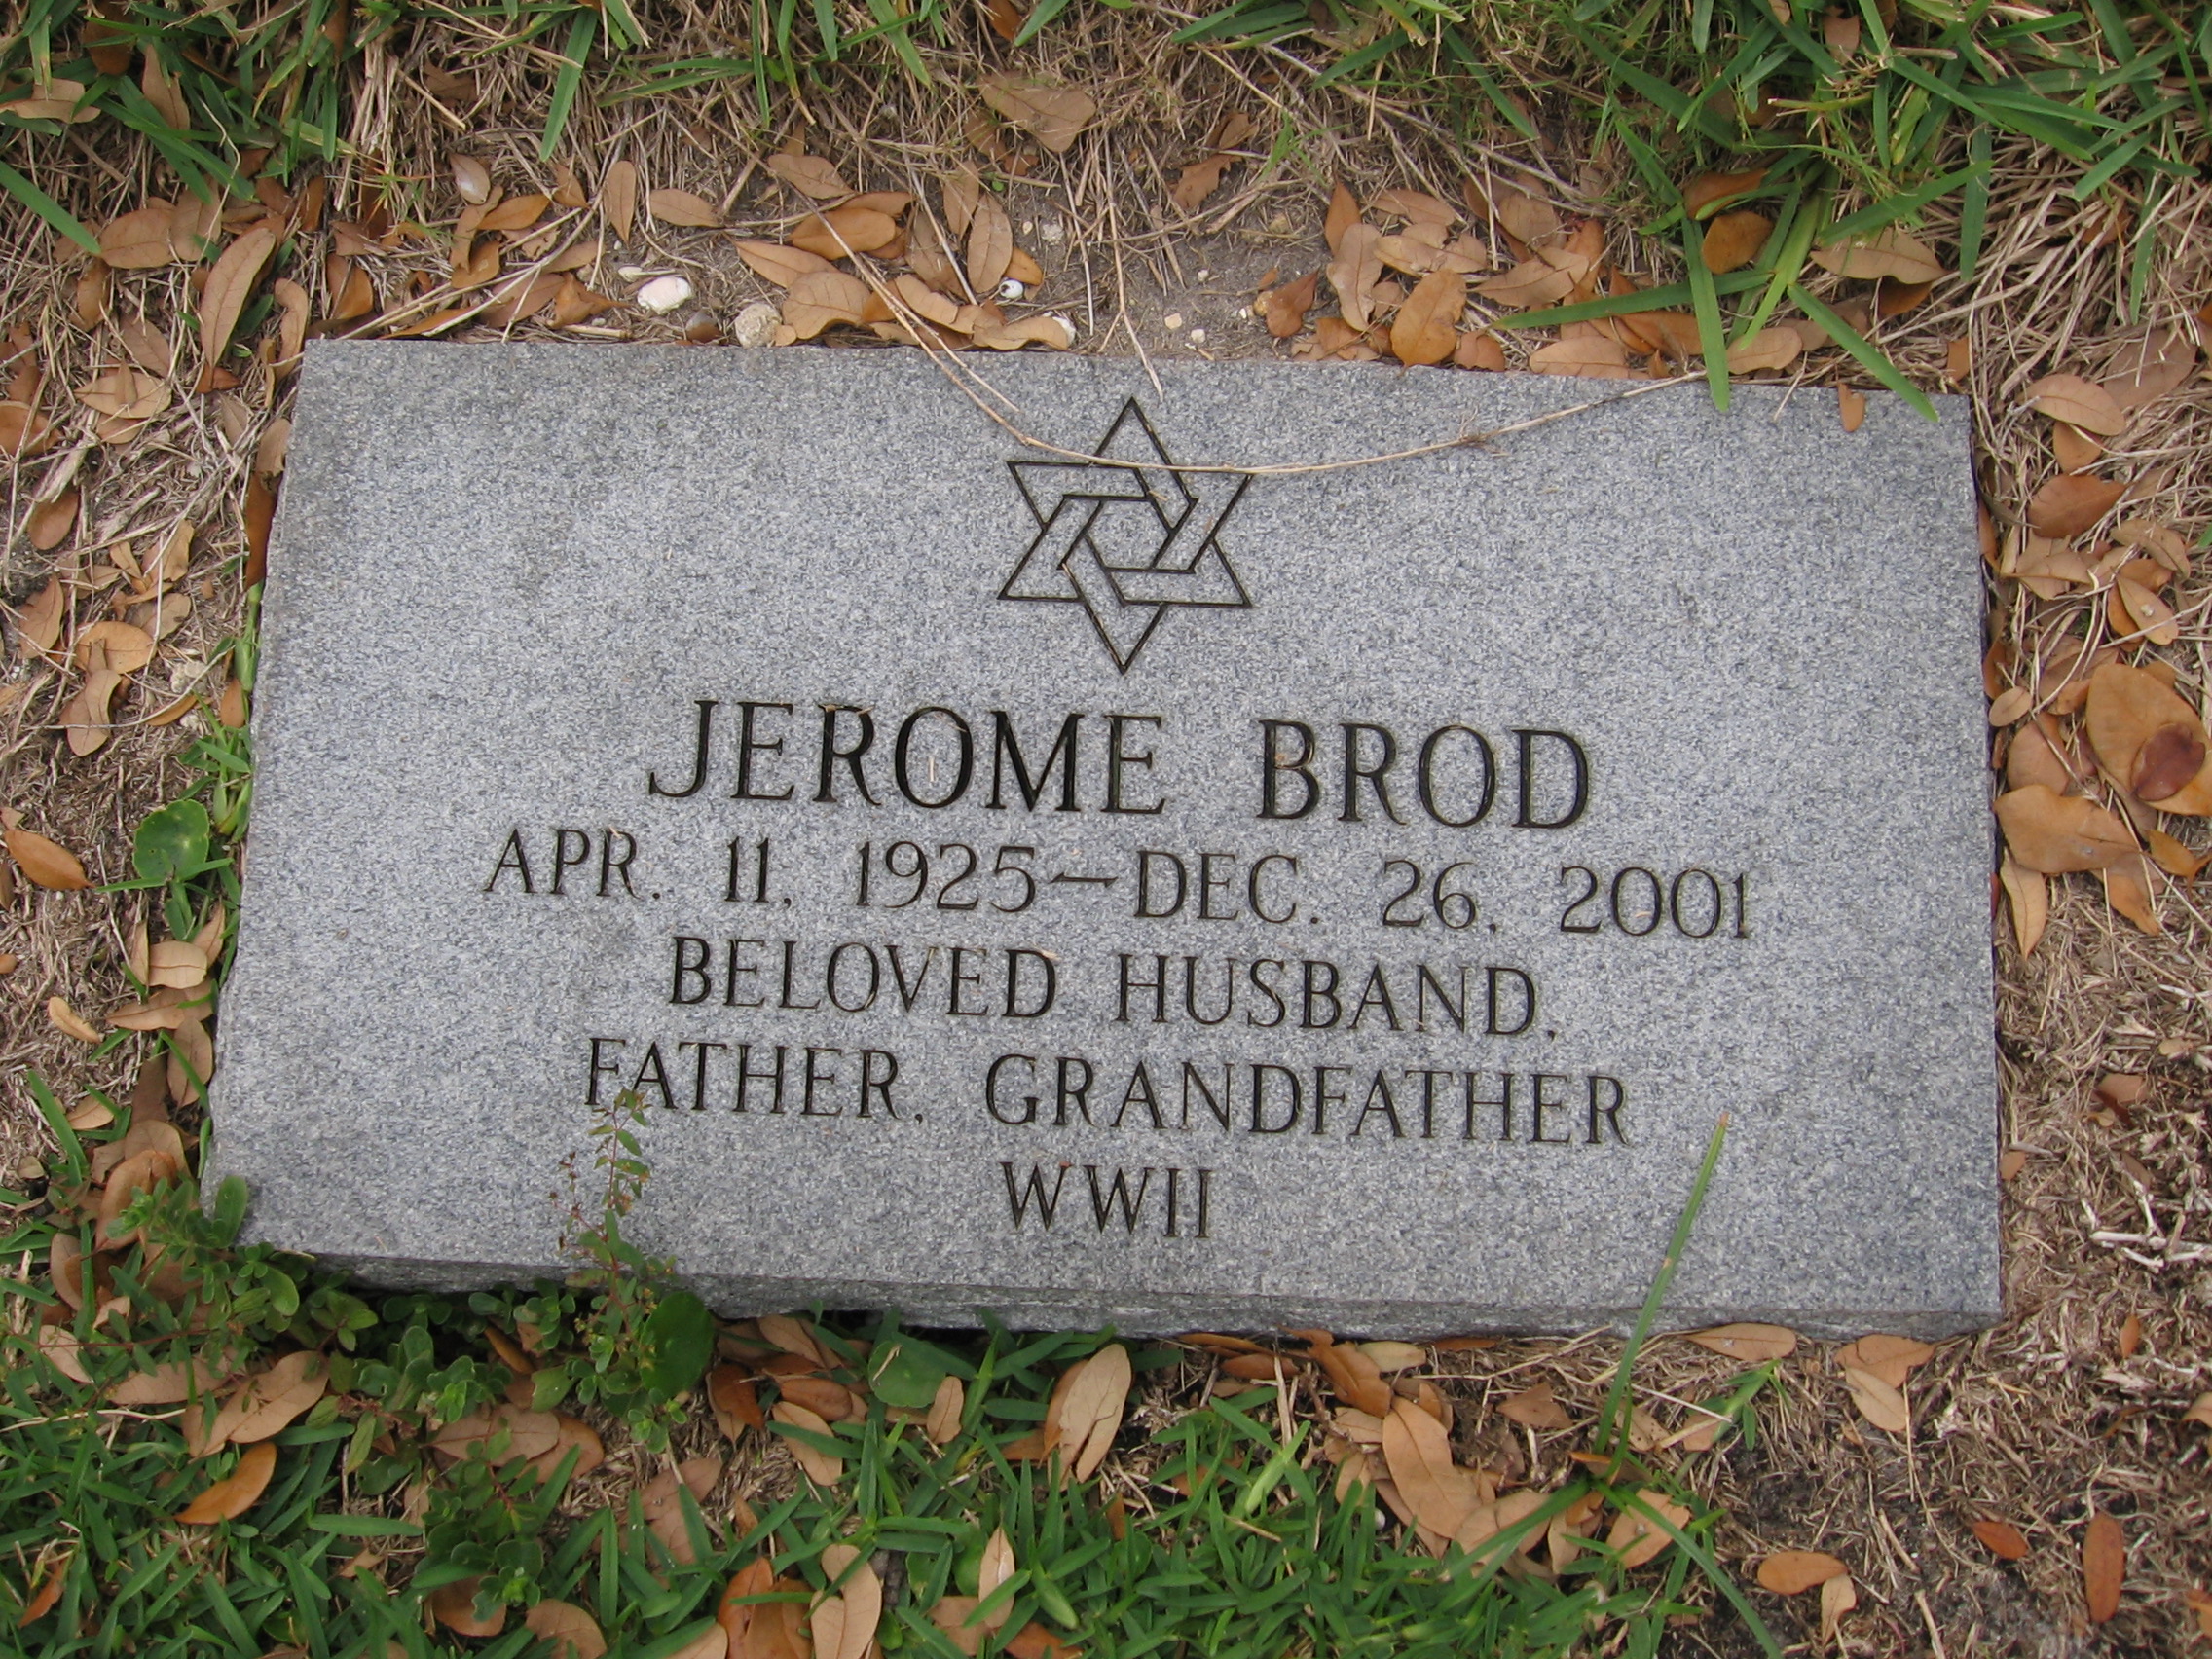 Jerome Brod